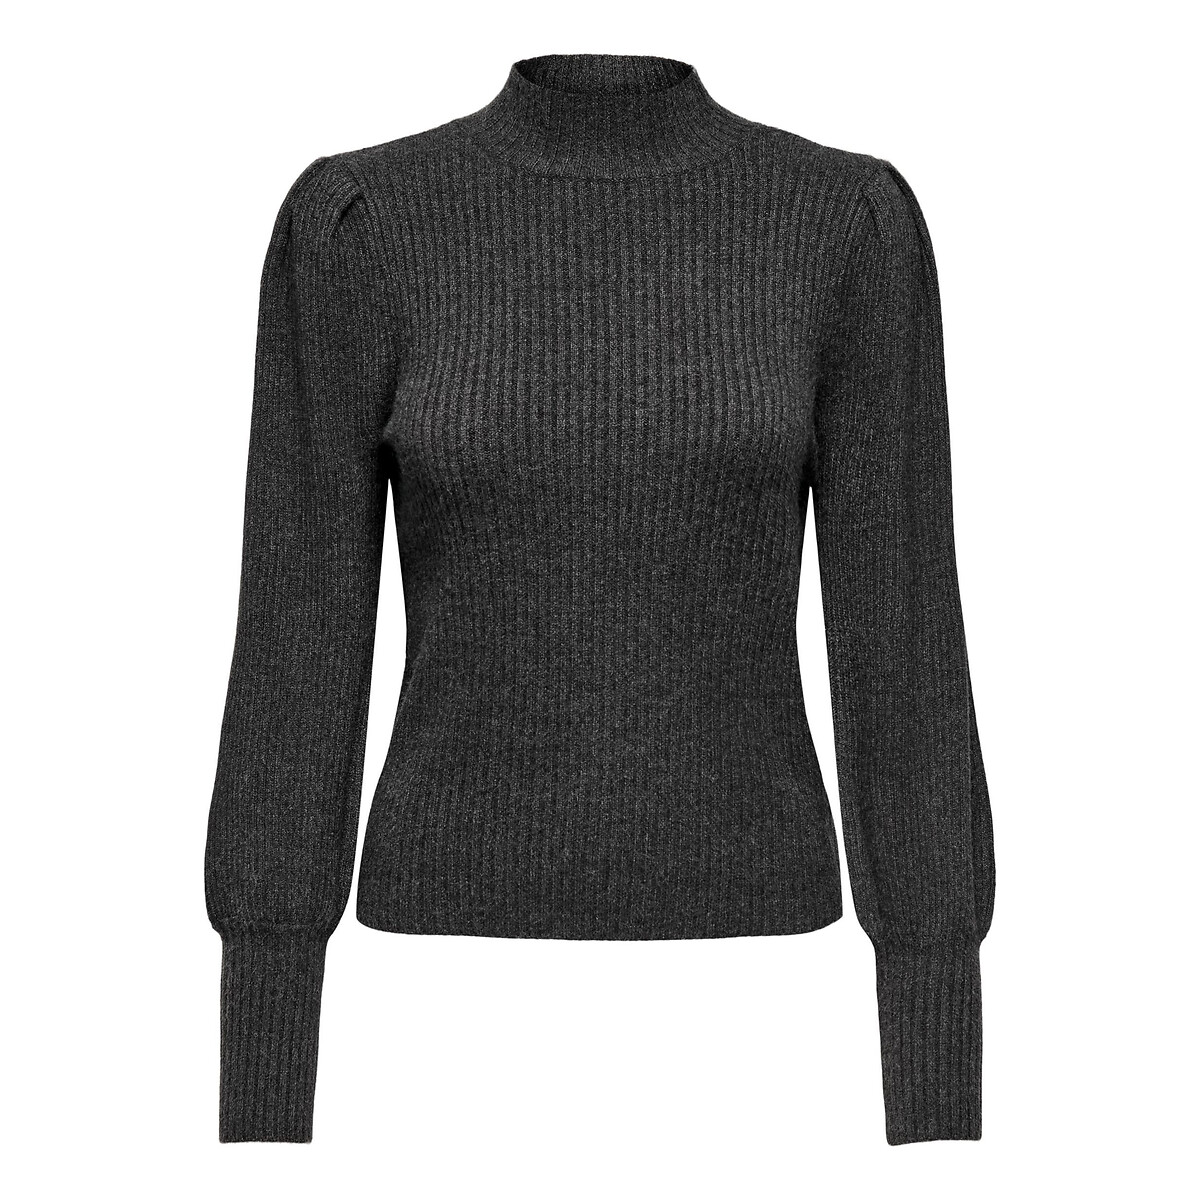 Пуловер с воротником-стойкой из тонкого трикотажа XXL серый пуловер с длинным воротником из плетеного трикотажа l синий